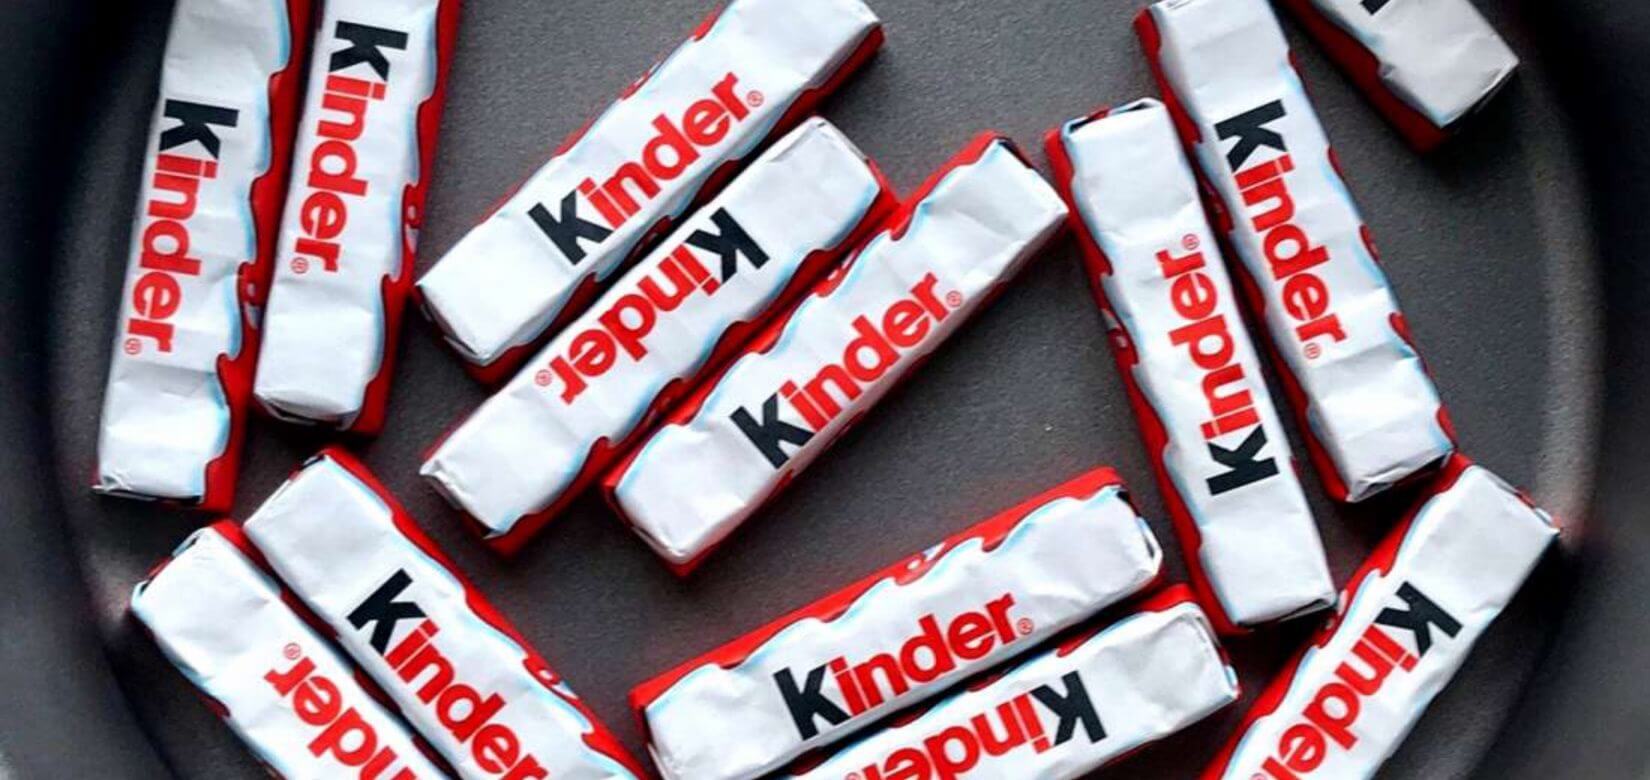 Ανακαλούνται και στην Ελλάδα σοκολατάκια Kinder - Κίνδυνος σαλμονέλας